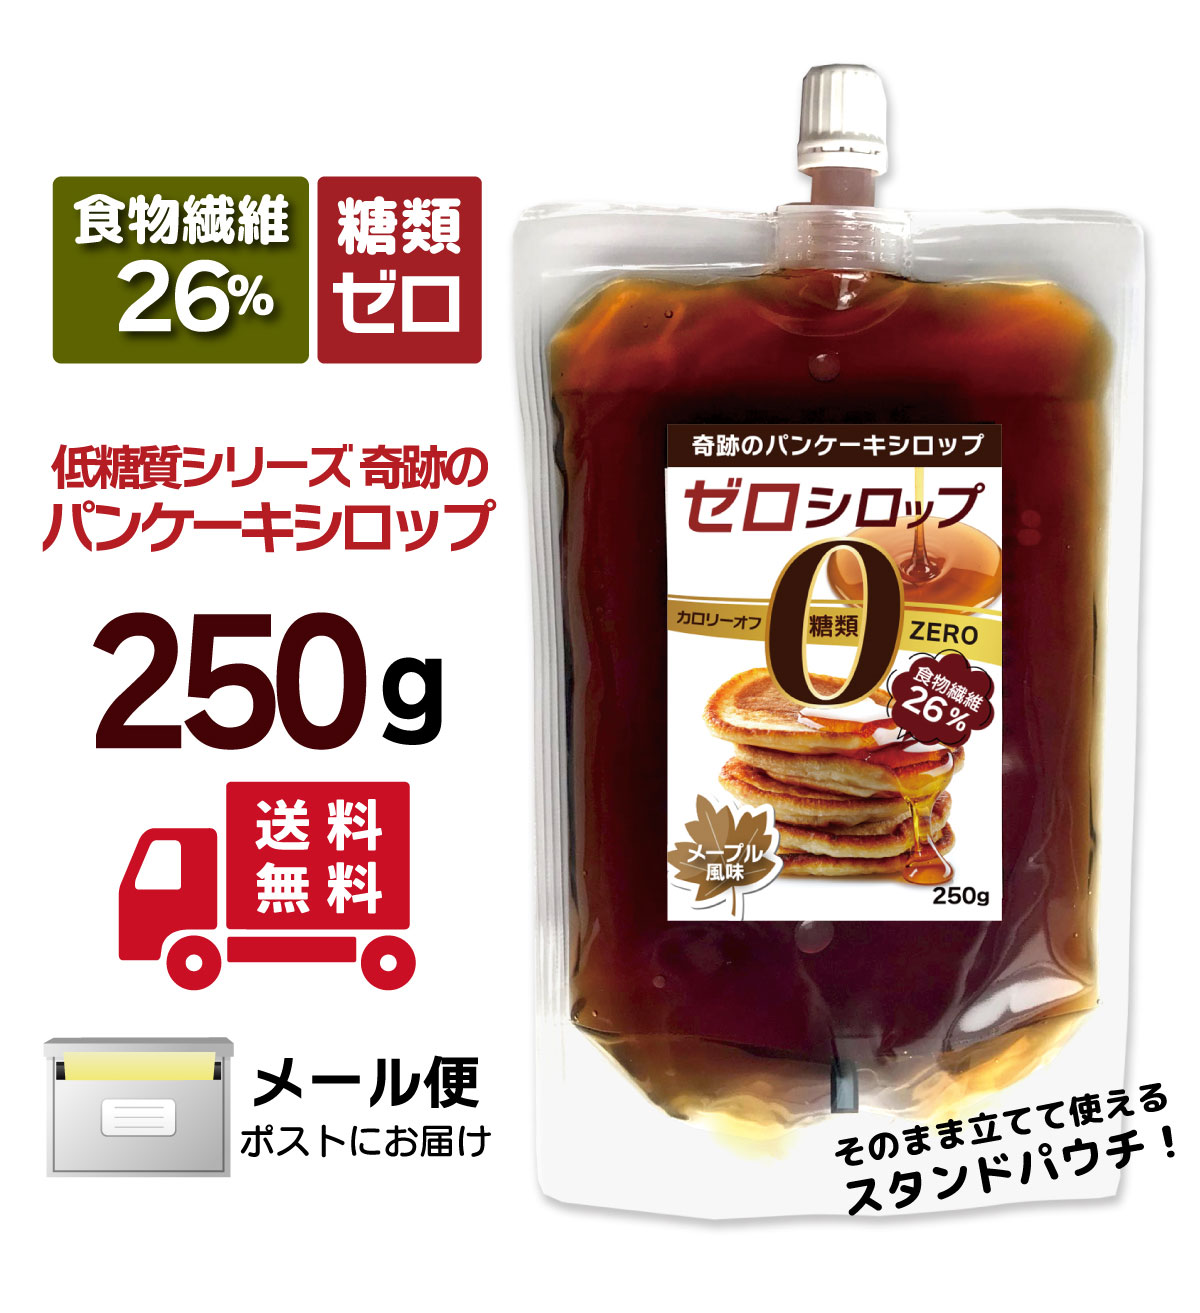 新入荷 流行 600g × 麦芽水飴 2個 永田製飴 砂糖、甘味料